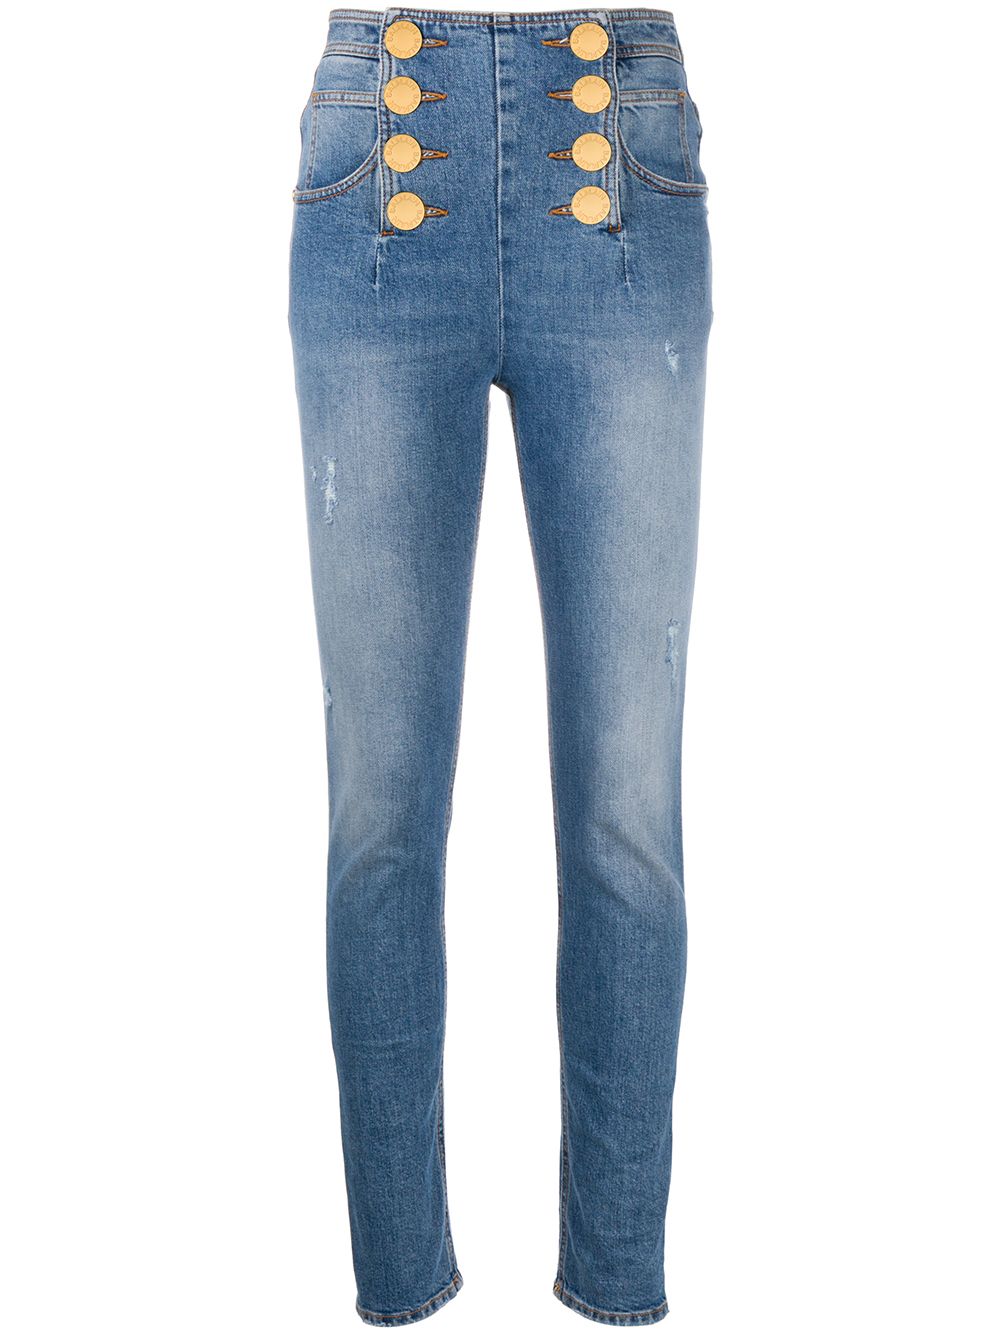 фото Balmain джинсы скинни с пуговицами